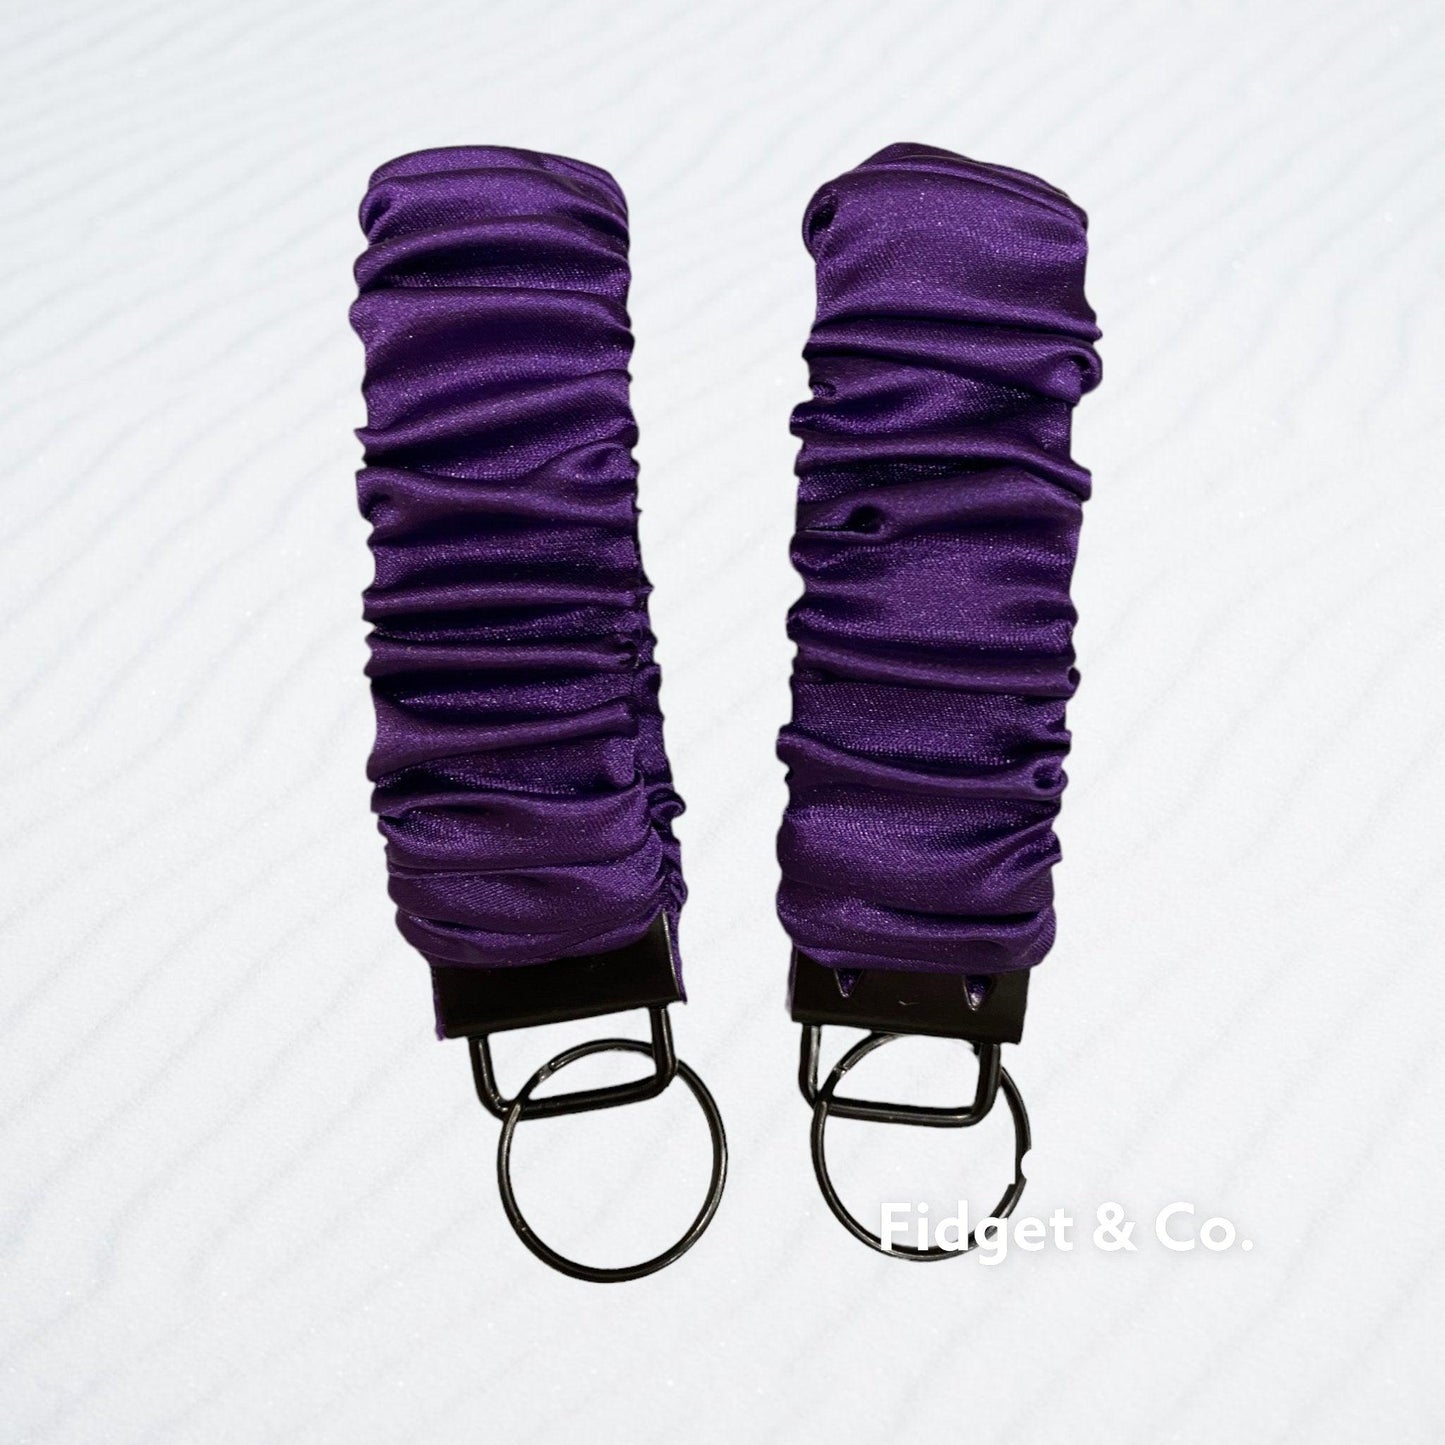 Scrunchie Wristlet Keychain Fob - Deluxe Satin Purple - Fidget & Co.